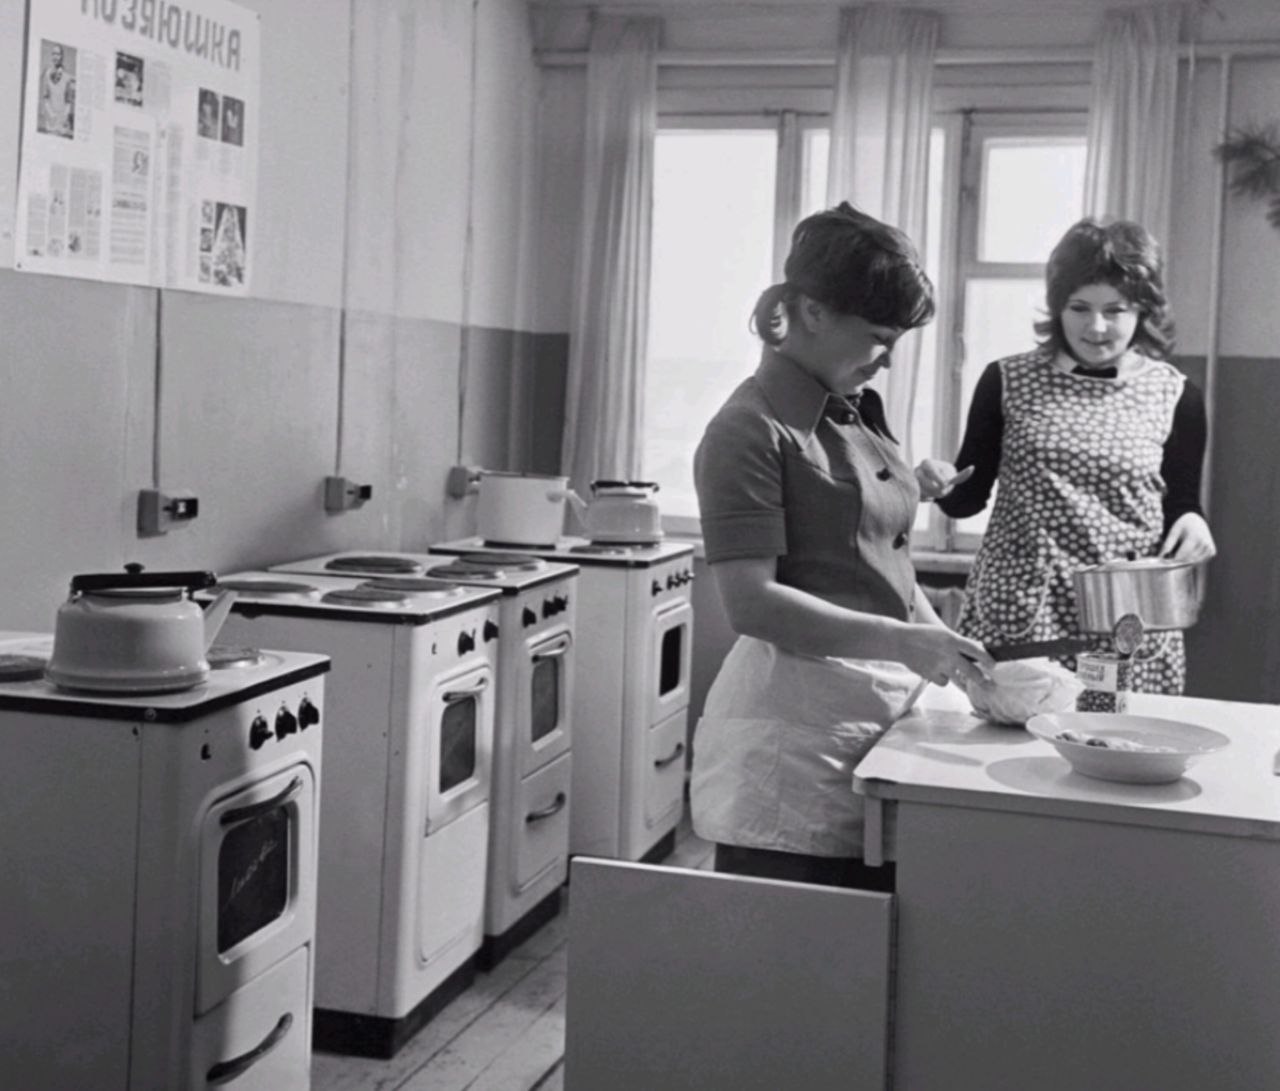 Как жили в 60 годы. Советское общежитие СССР. Советская кухня. Советская женщина на кухне. Советское студенческое общежитие.